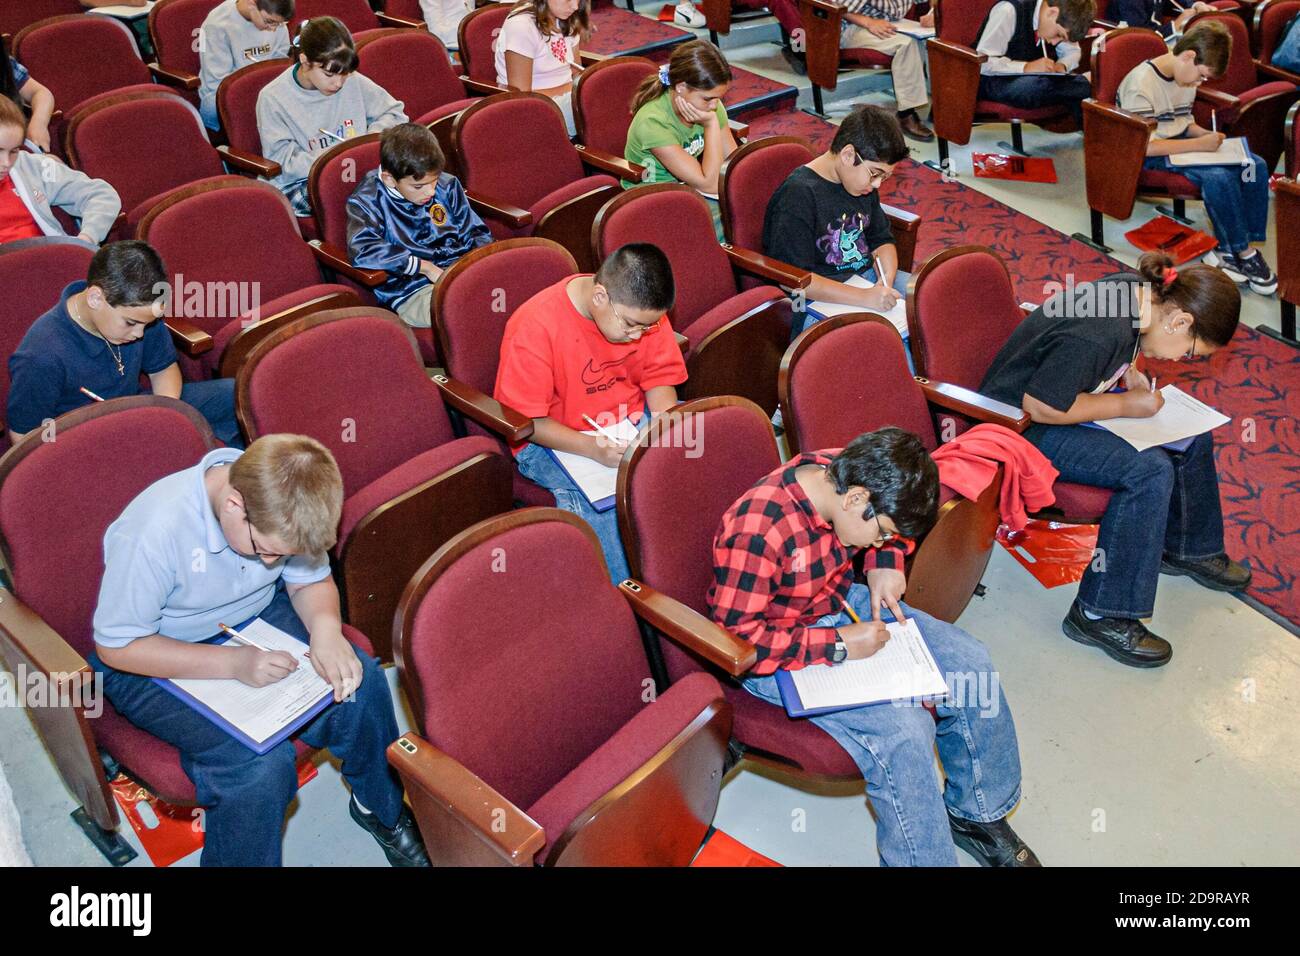 Miami Florida,Dade Monroe County Spelling Bee,evento anual de estudiantes que toman examen de examen, separación de asientos sentados por separado Foto de stock